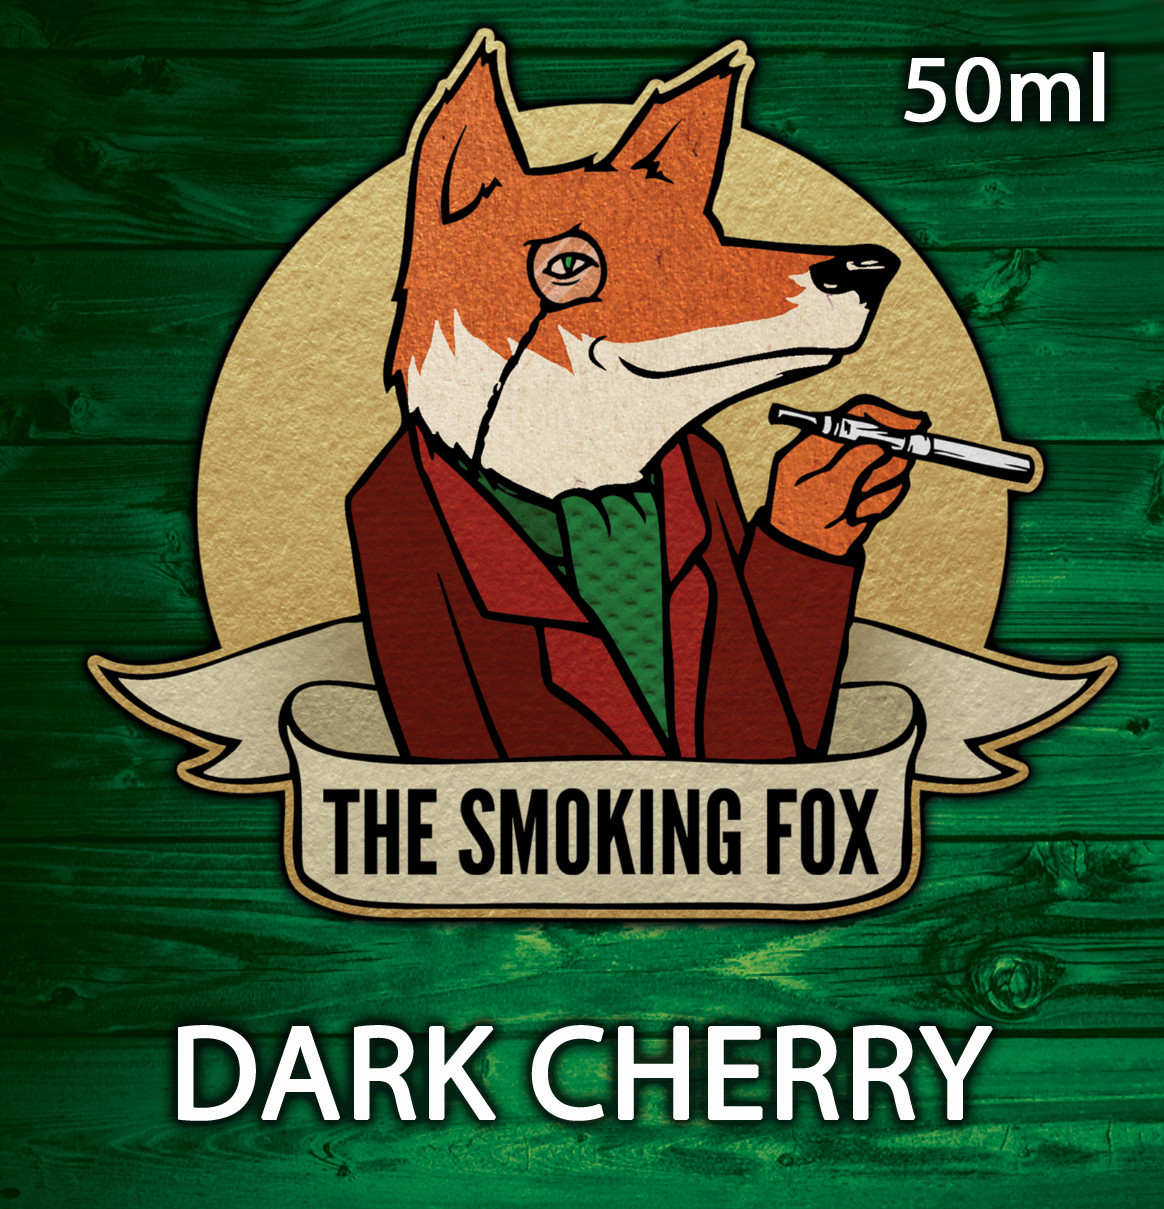 THE SMOKING FOX 50ml - DARK CHERRY